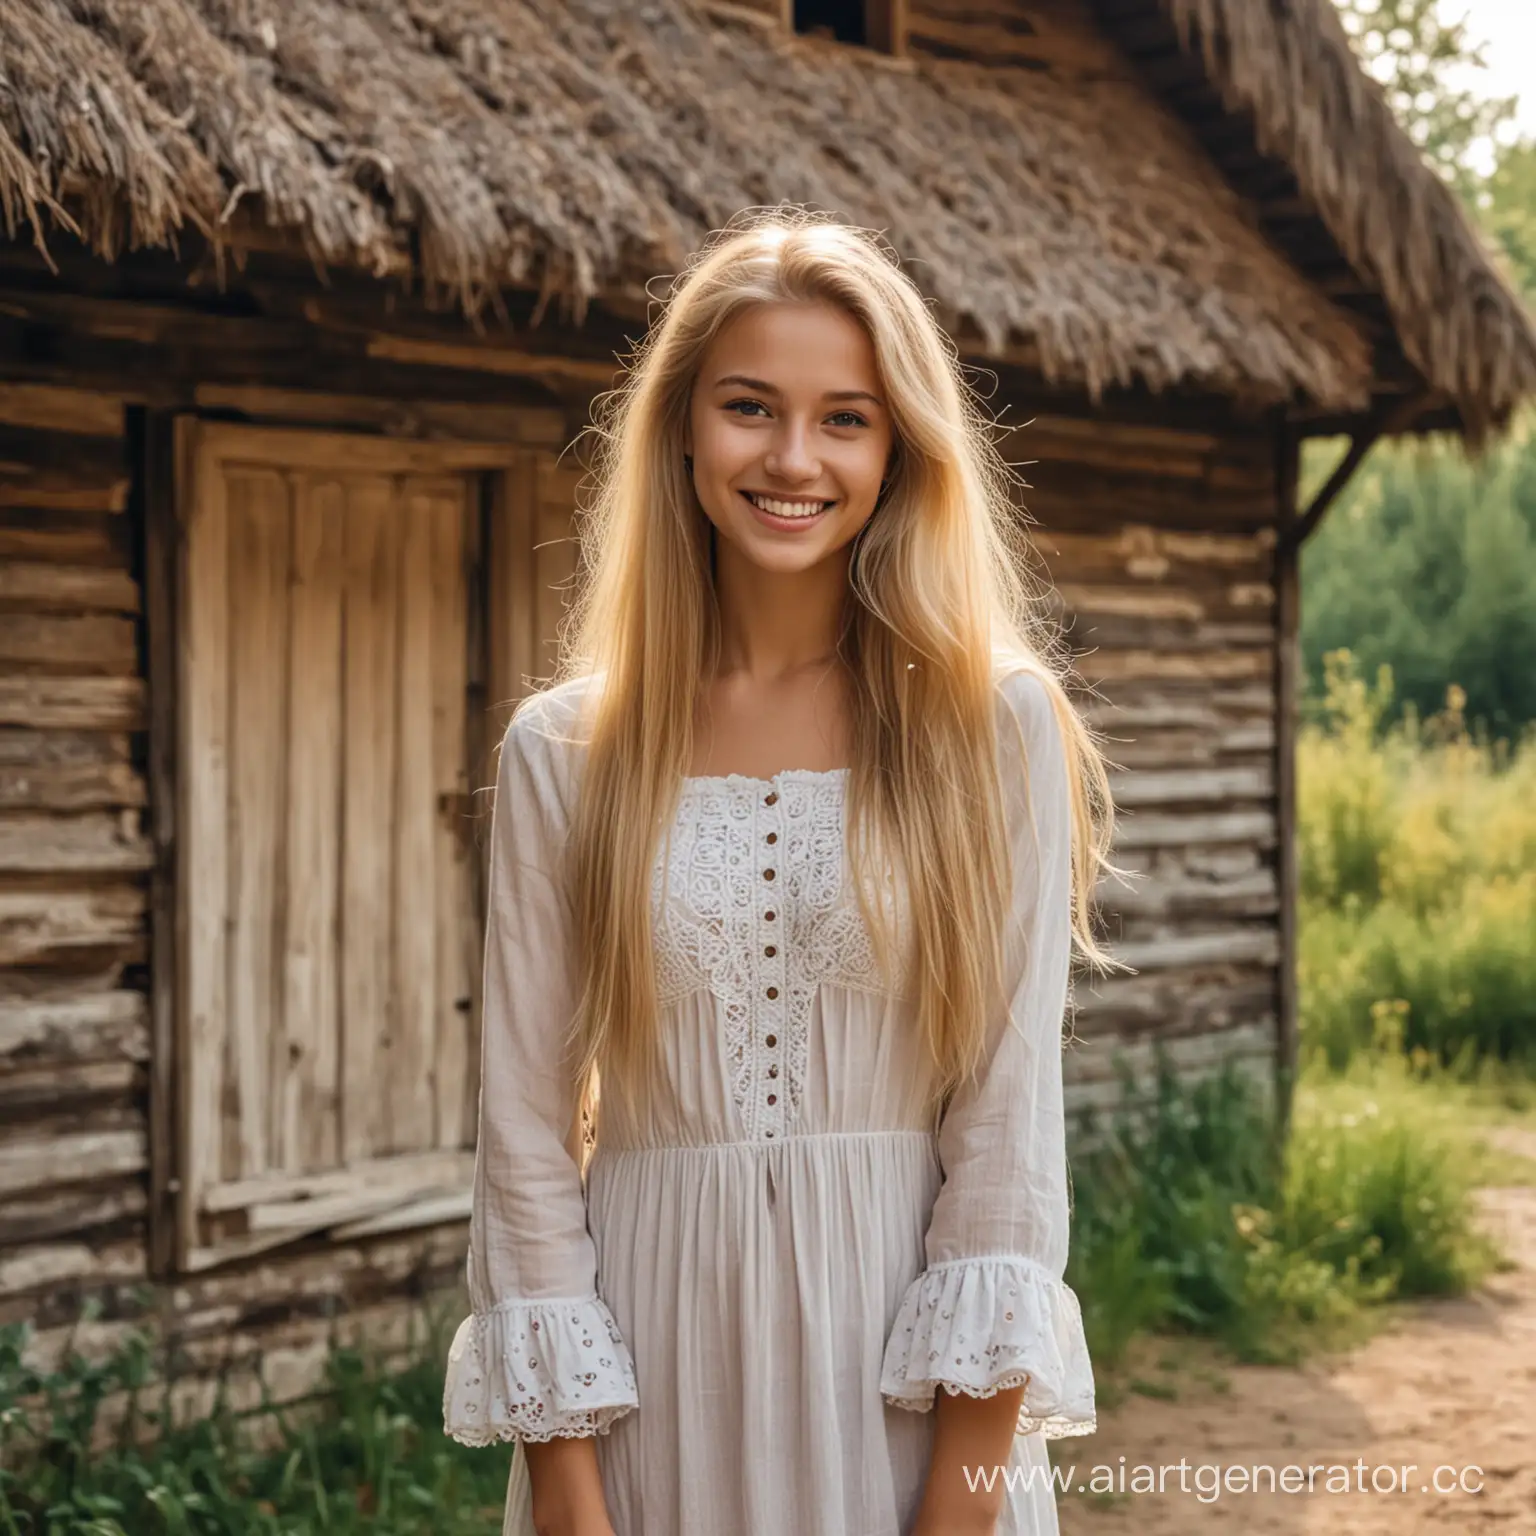 молодая, красивая девушка с длинными светлыми волосами, с милой улыбкой, в старом длинном одеянии, на фоне леса и старой избы